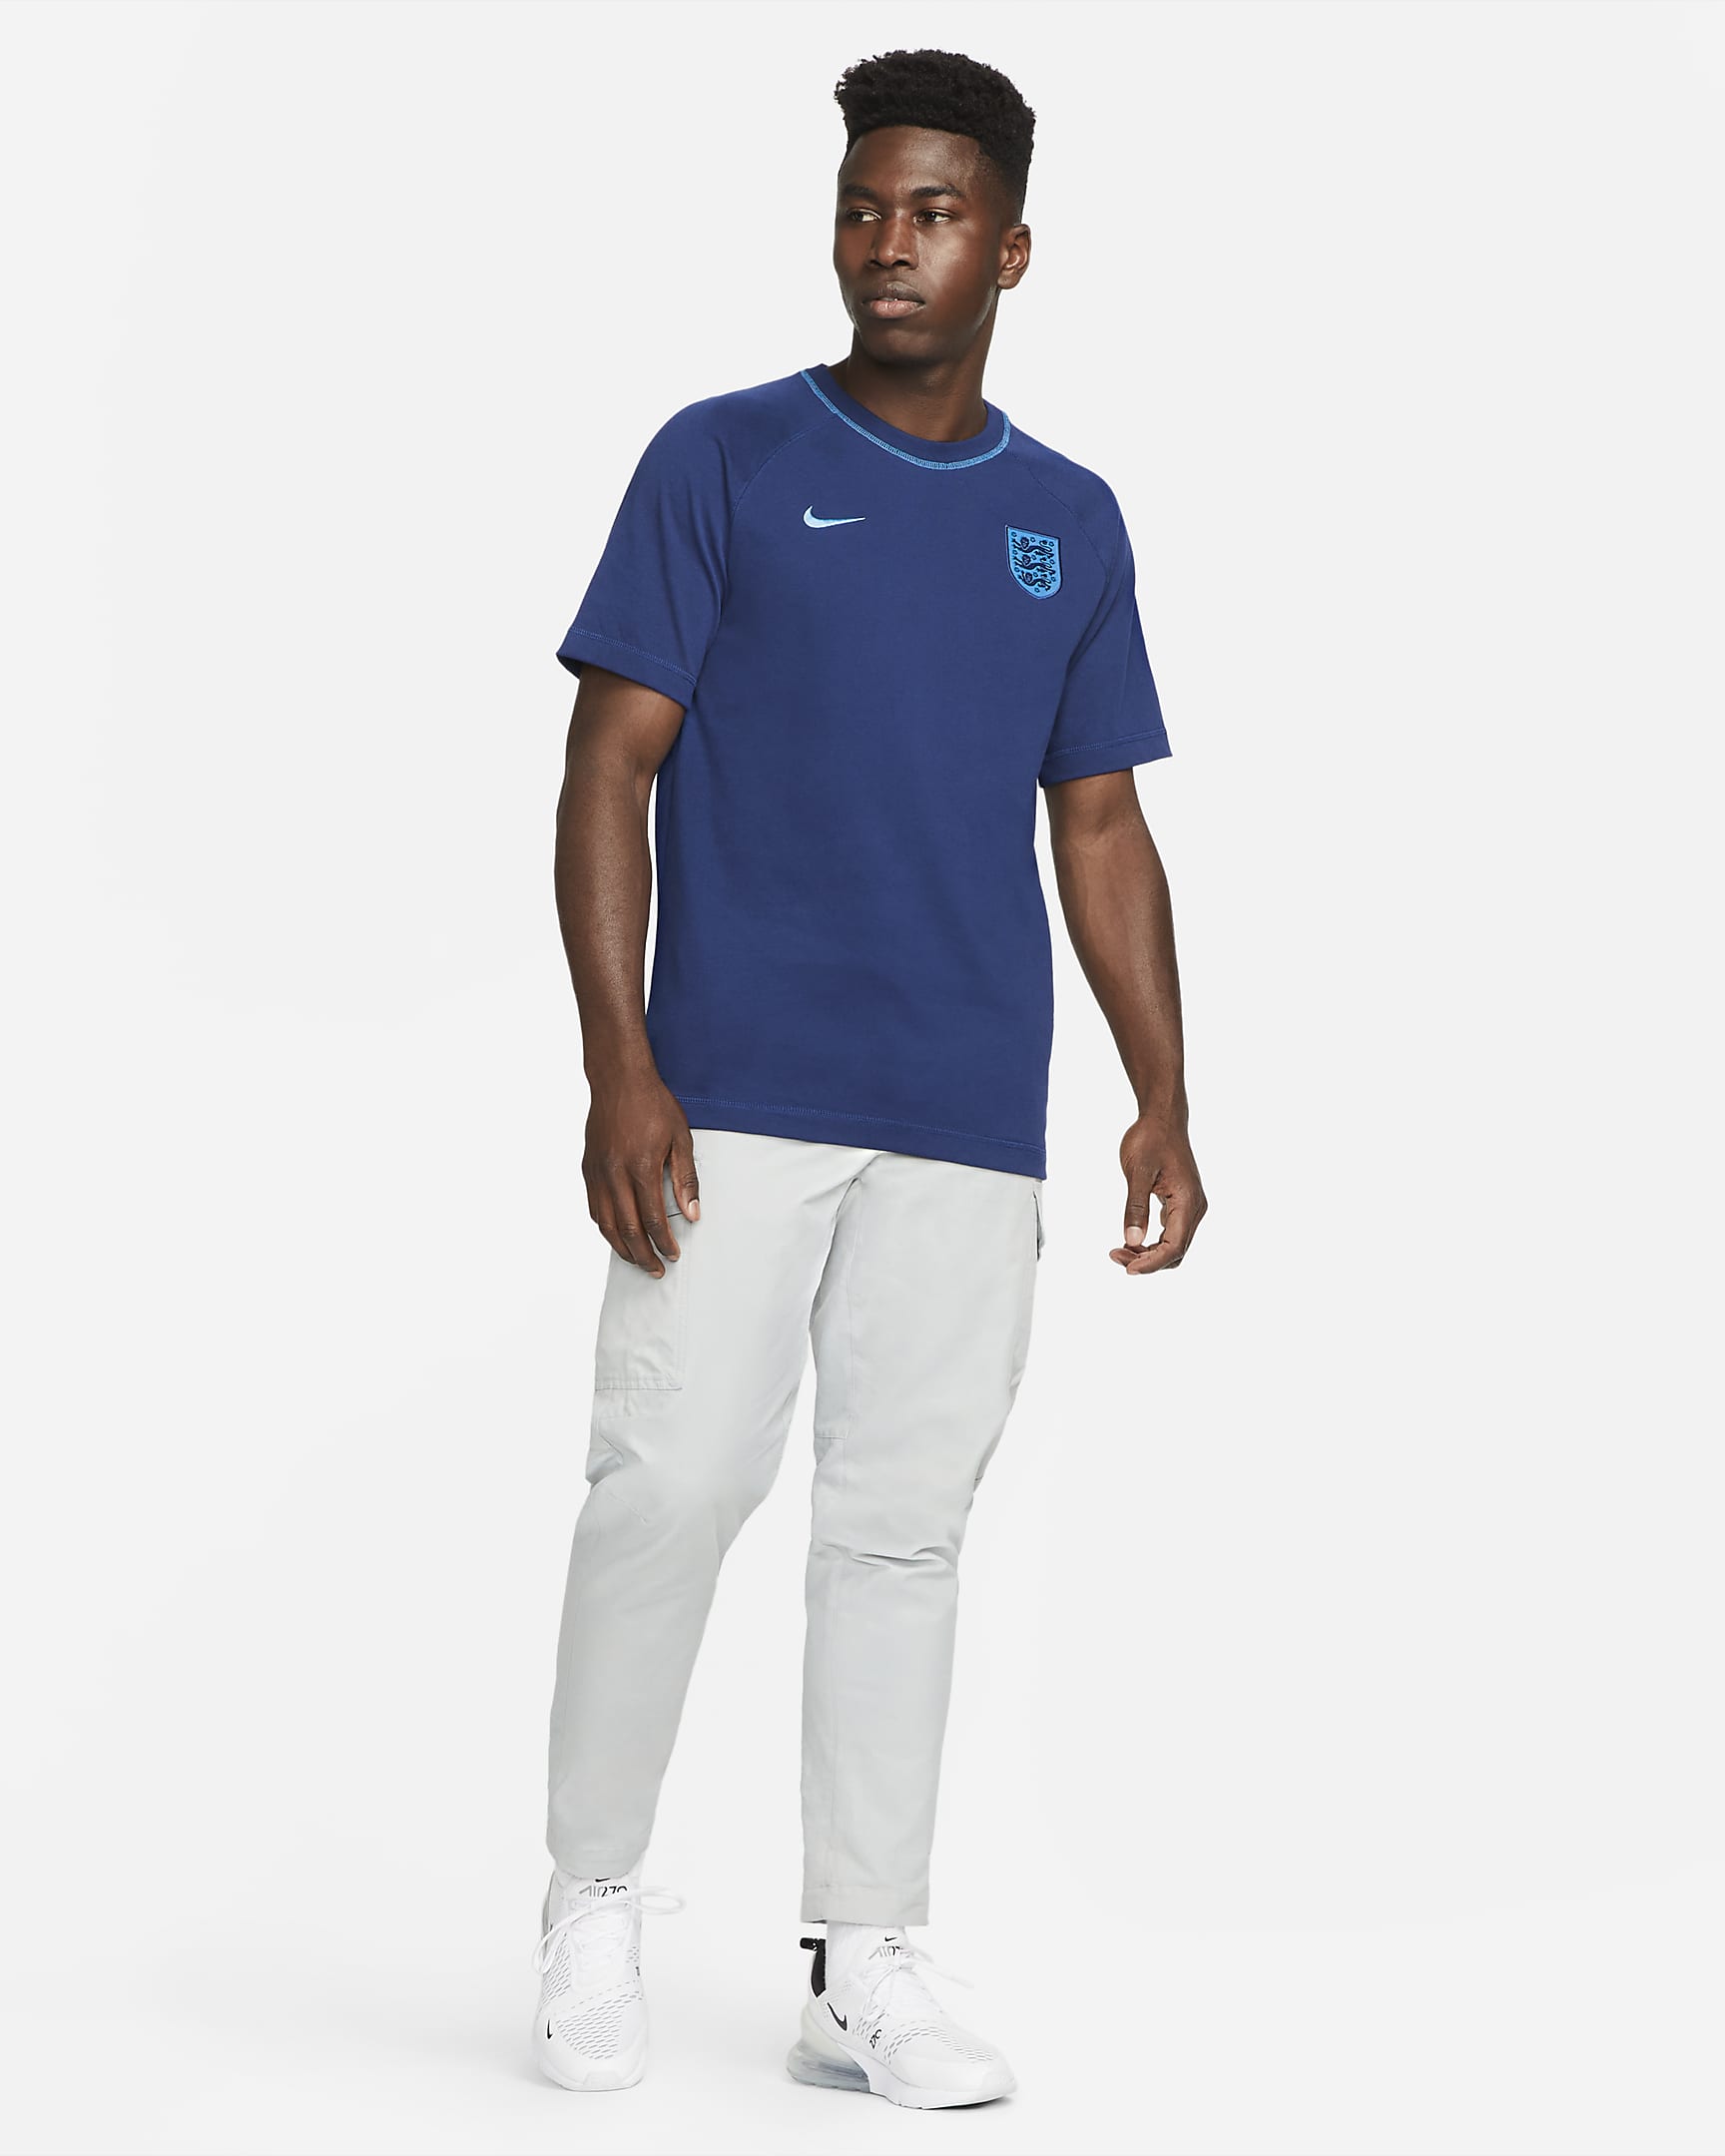 Playera de fútbol Nike para hombre de Inglaterra. Nike.com